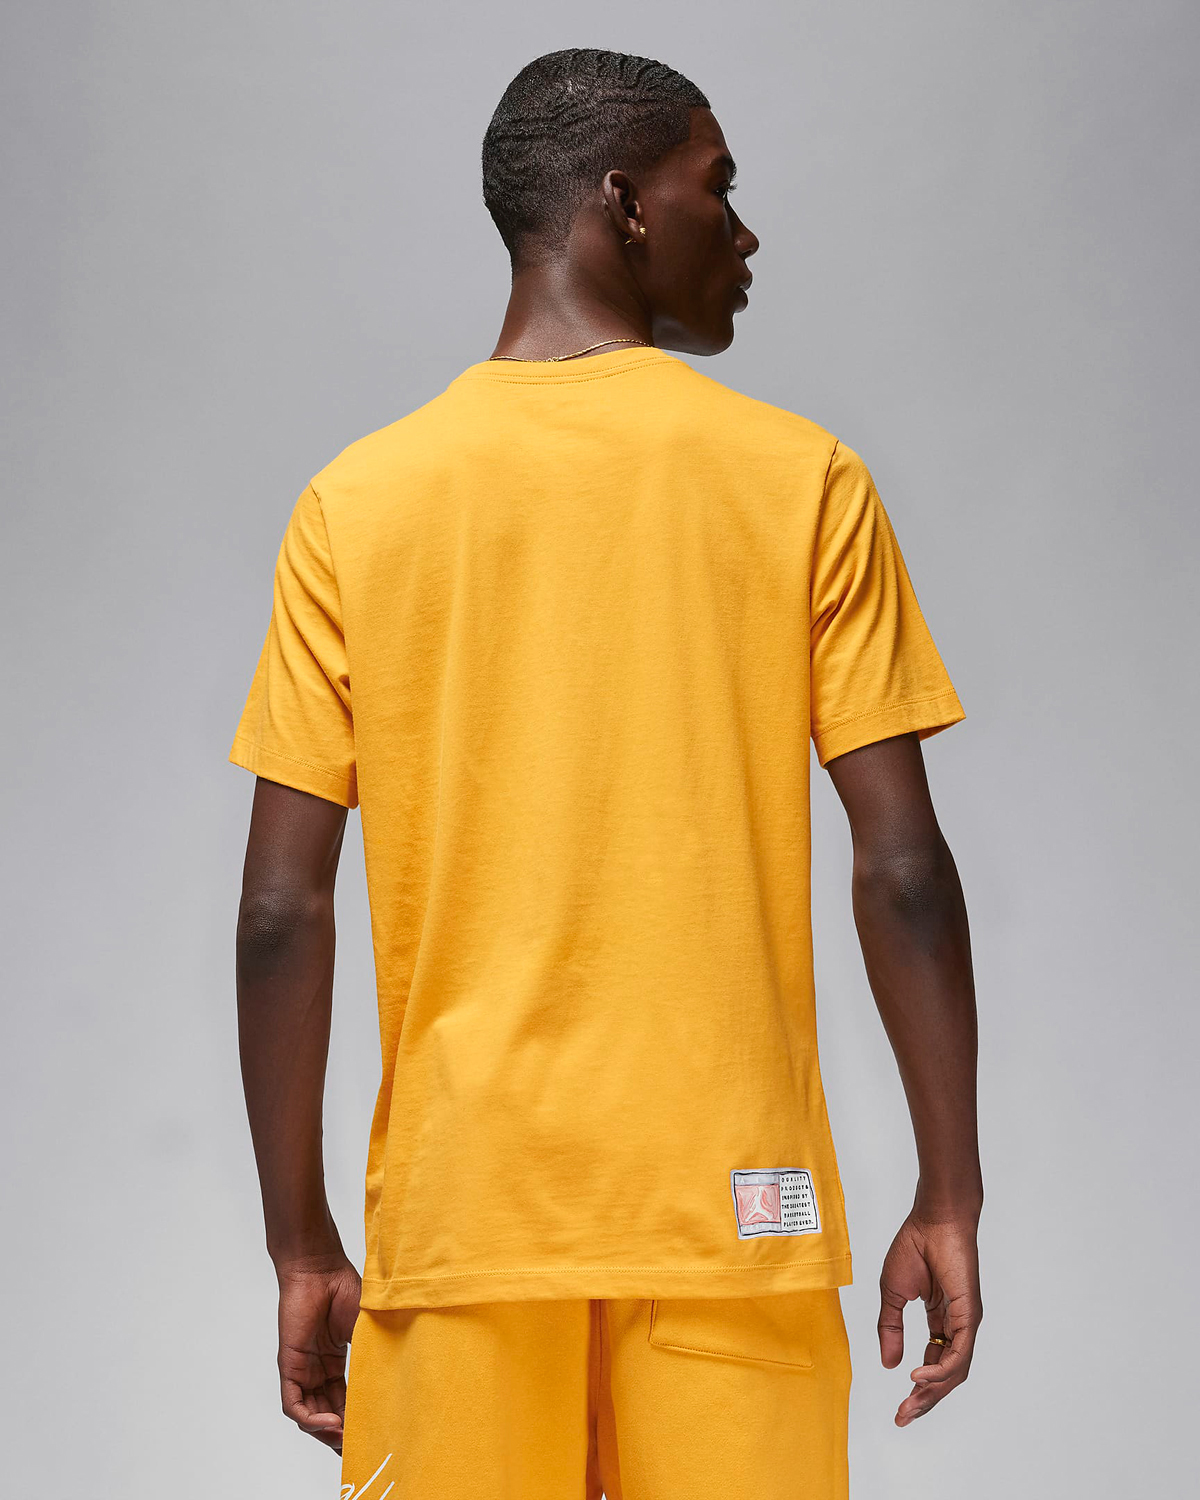 Air-Jordan-6-Yellow-Ochre-Matching-Shirt-2